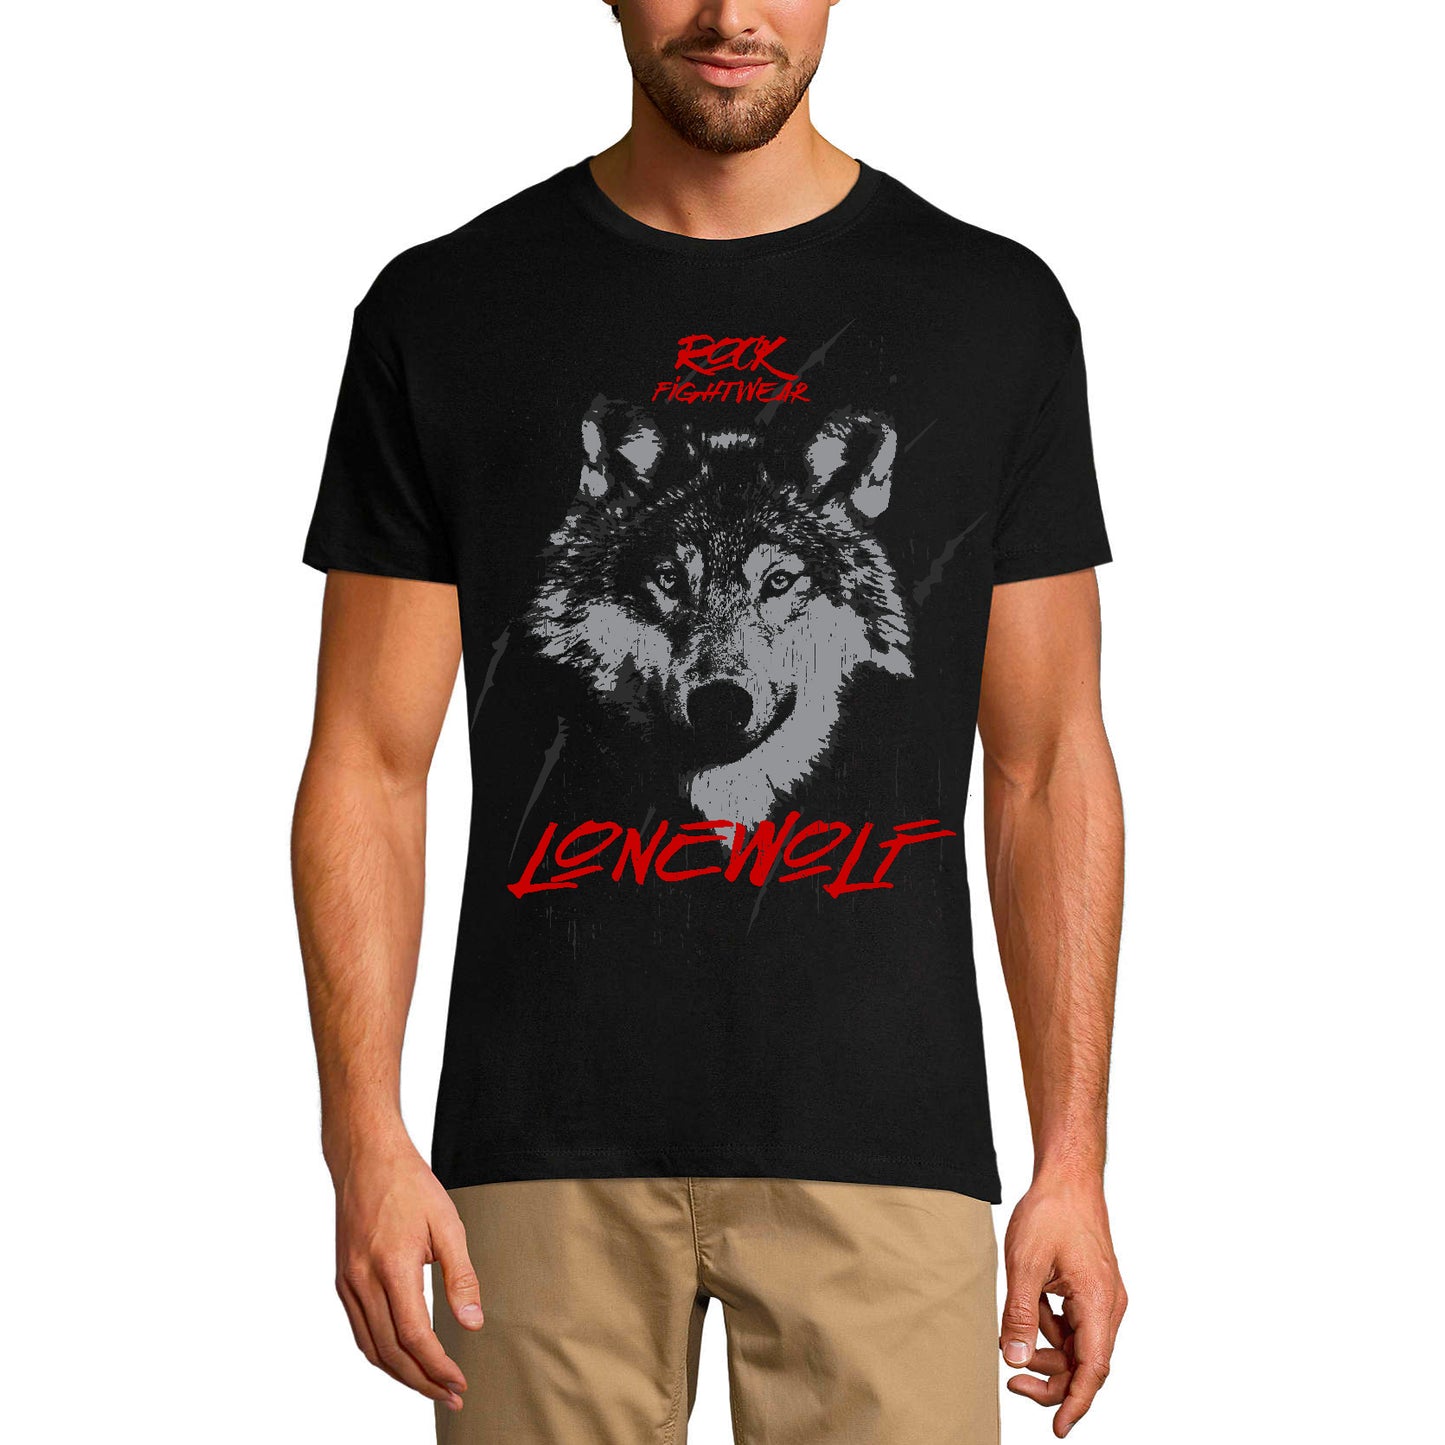 T-shirt graphique ULTRABASIC pour hommes Rock Fightwear - Lonewolf - Chemise loup pour homme